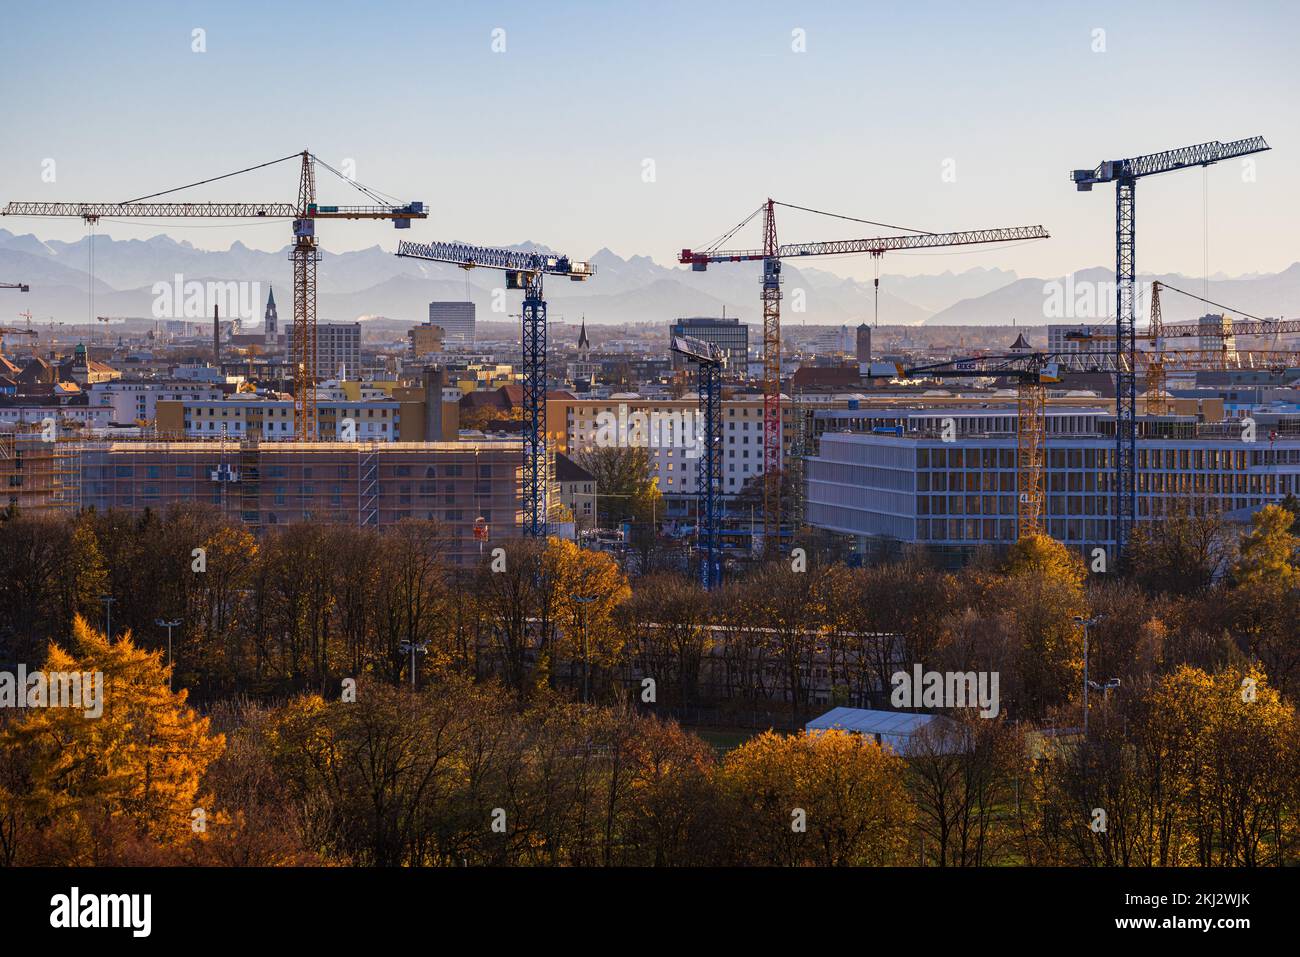 MONACO di Baviera, GERMANIA - 23 NOVEMBRE 2022: Vista panoramica della città con gru dai cantieri di costruzione di strade di mare che si sticchettano fuori Foto Stock